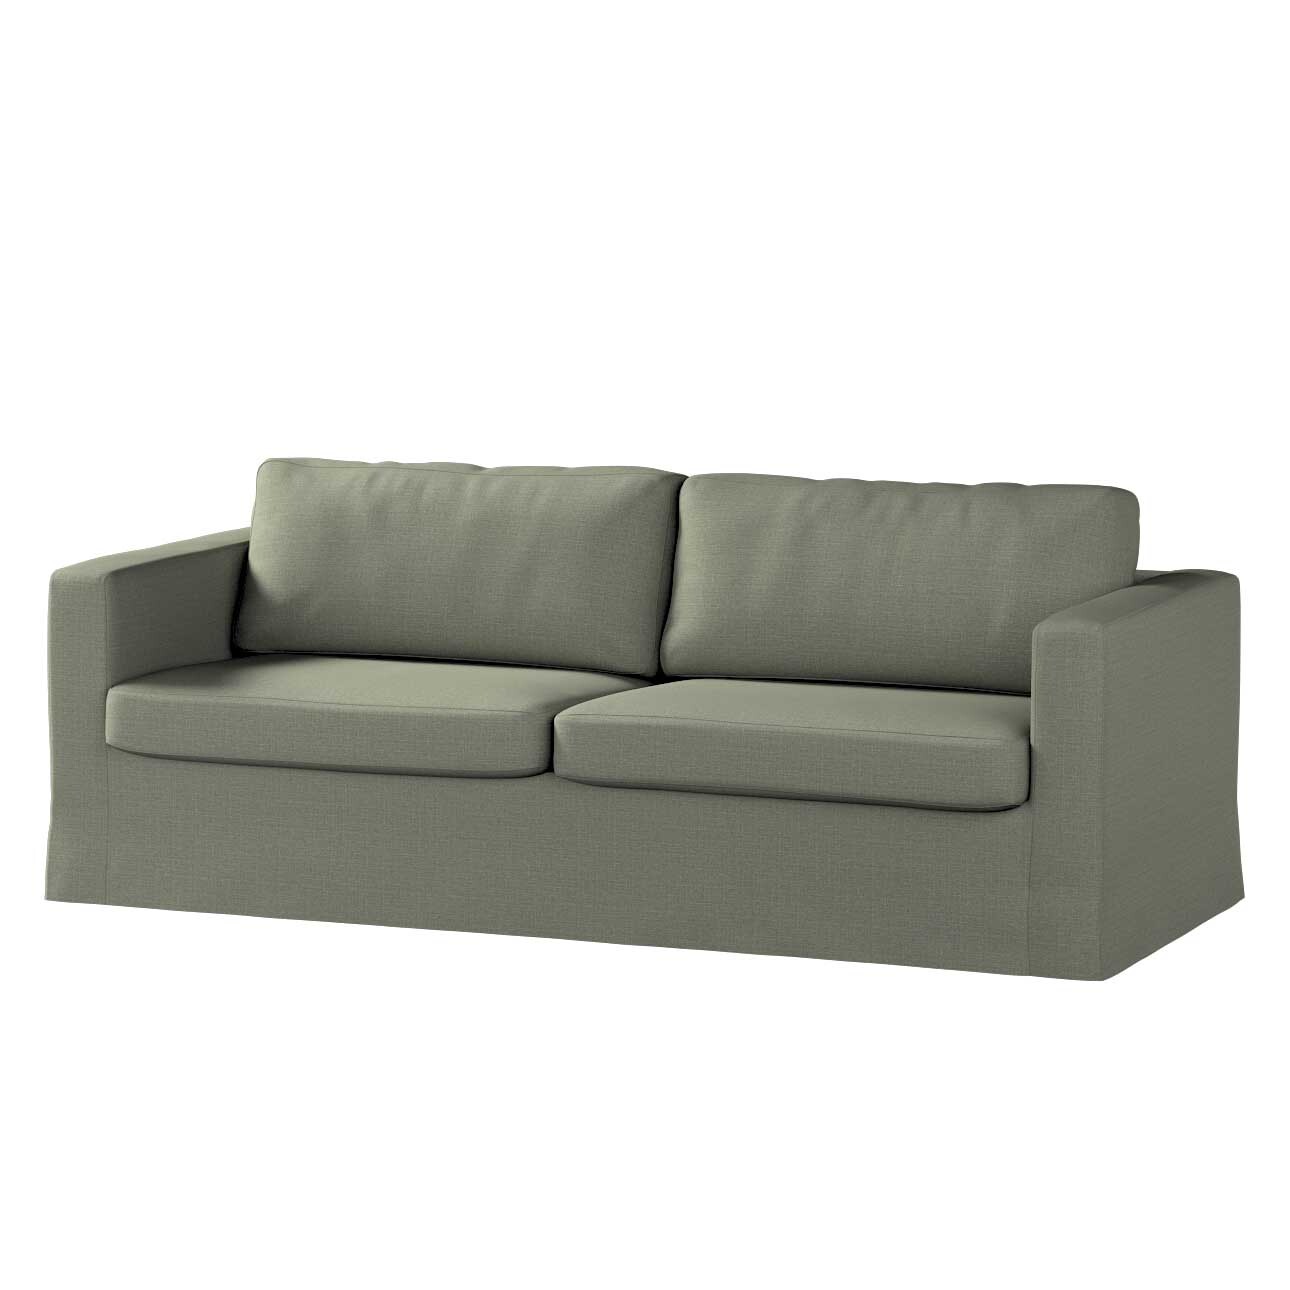 Bezug für Karlstad 3-Sitzer Sofa nicht ausklappbar, lang, khaki, Bezug für günstig online kaufen